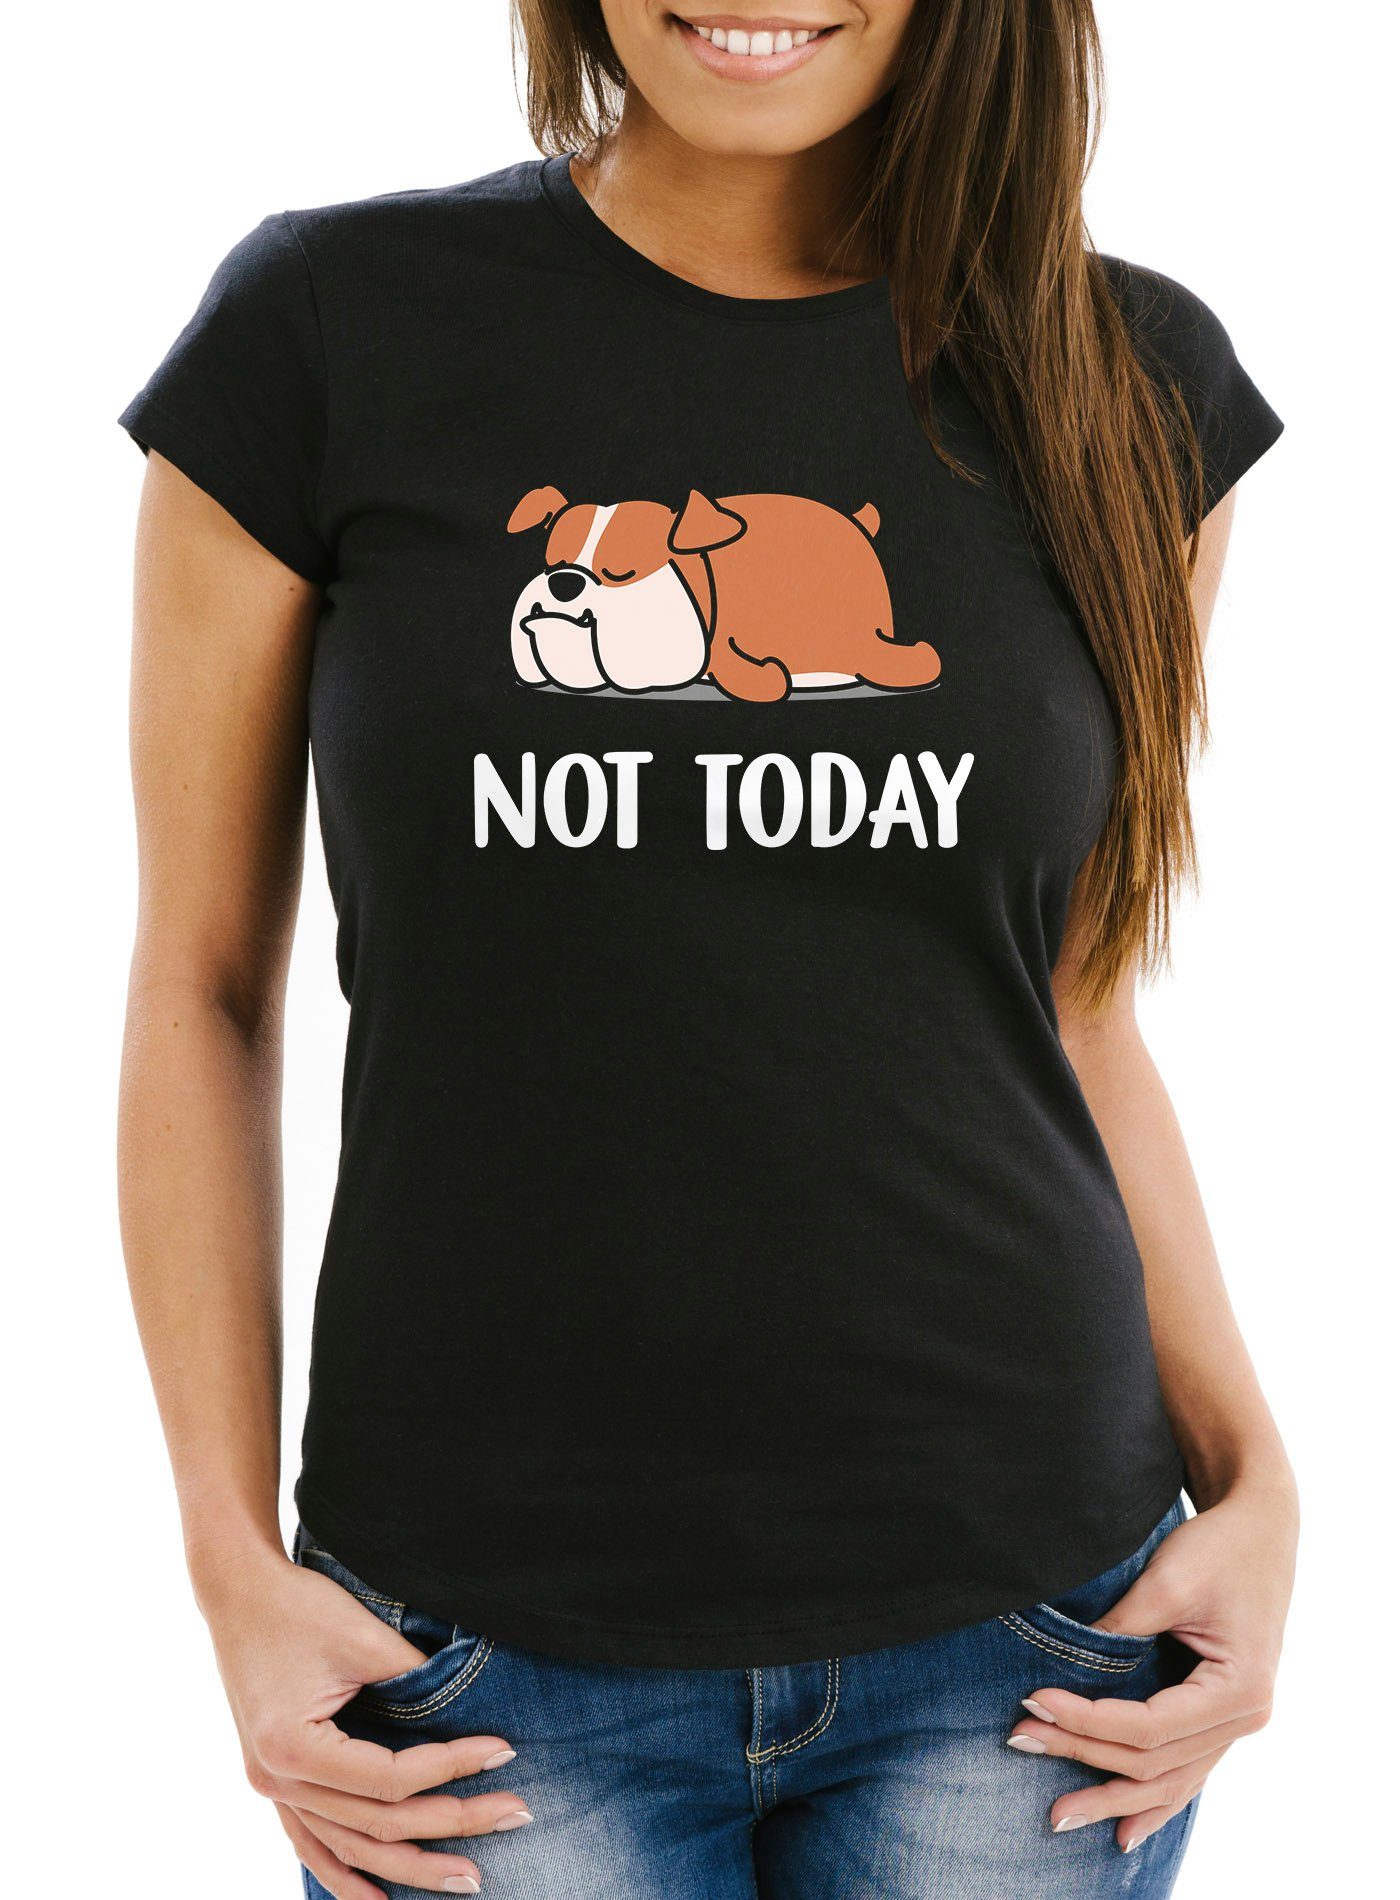 Today mit MoonWorks schwarz Fun-Shirt Damen T-Shirt Hund Not Chillen Print Lustiges Moonworks® Print-Shirt